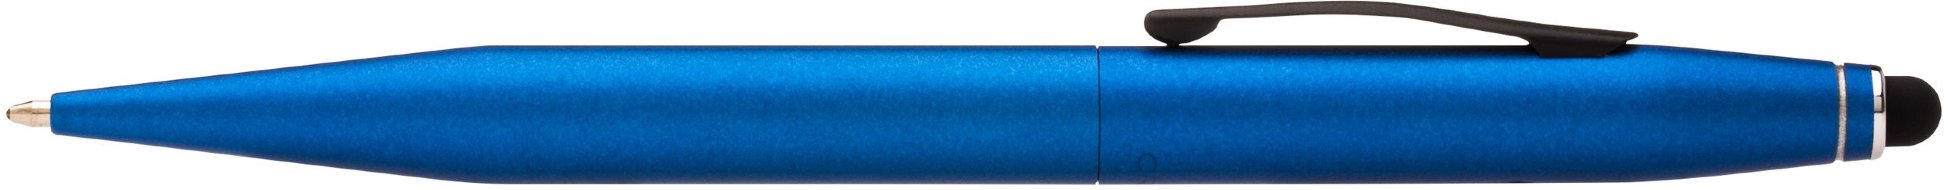 Шариковая ручка со стилусом Cross Tech2, Metallic Blue